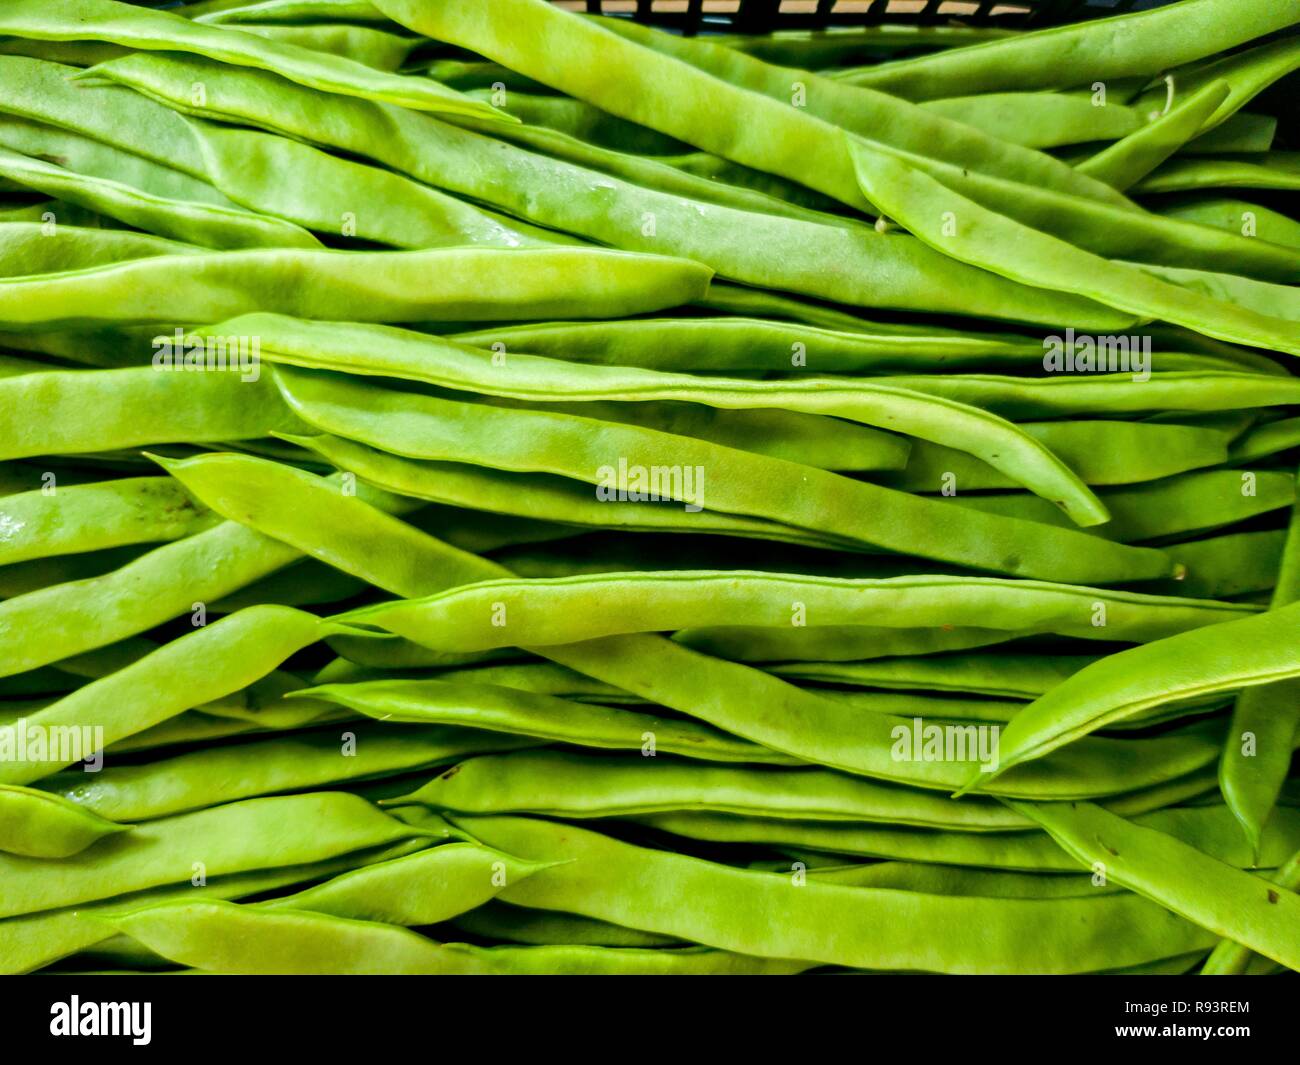 Chiudere l immagine di un sacco di fagioli verdi nel mercato. Posizione orizzontale Foto Stock